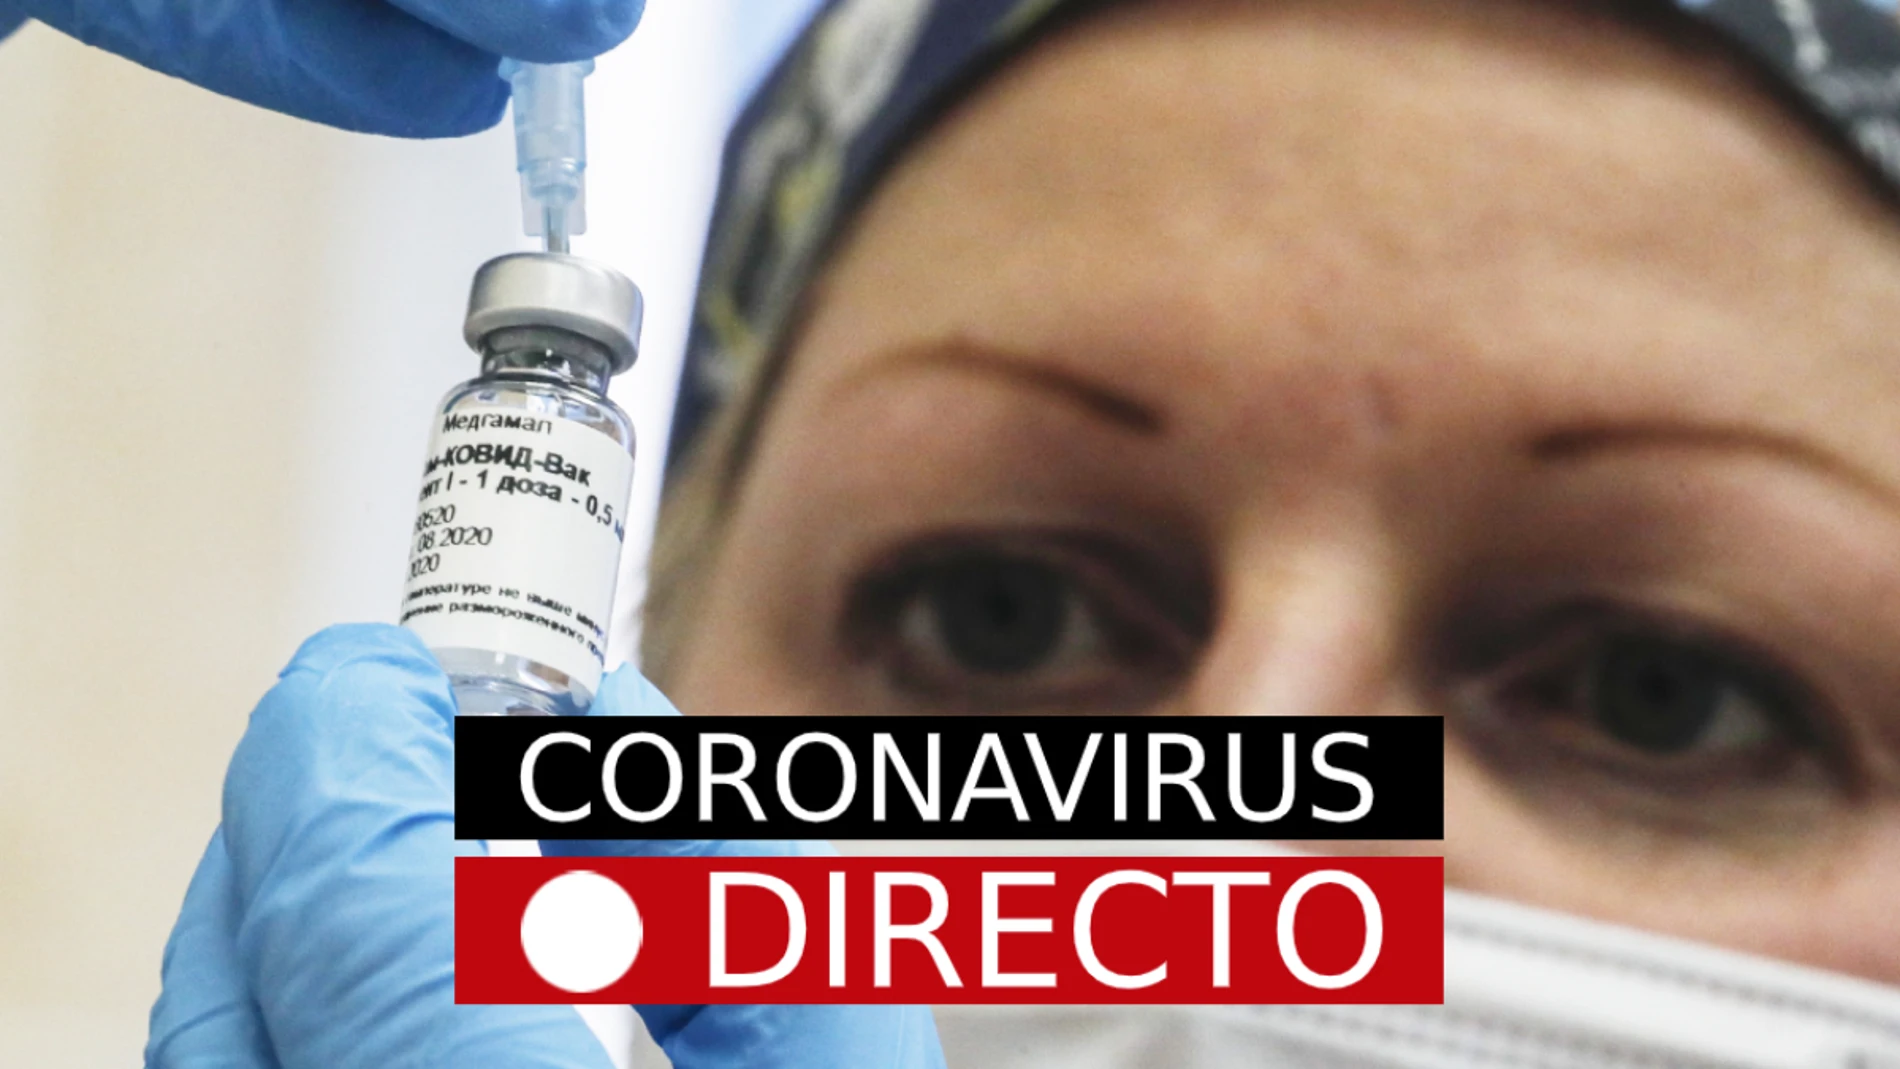 La última hora del coronavirus, en directo en laSexta.com